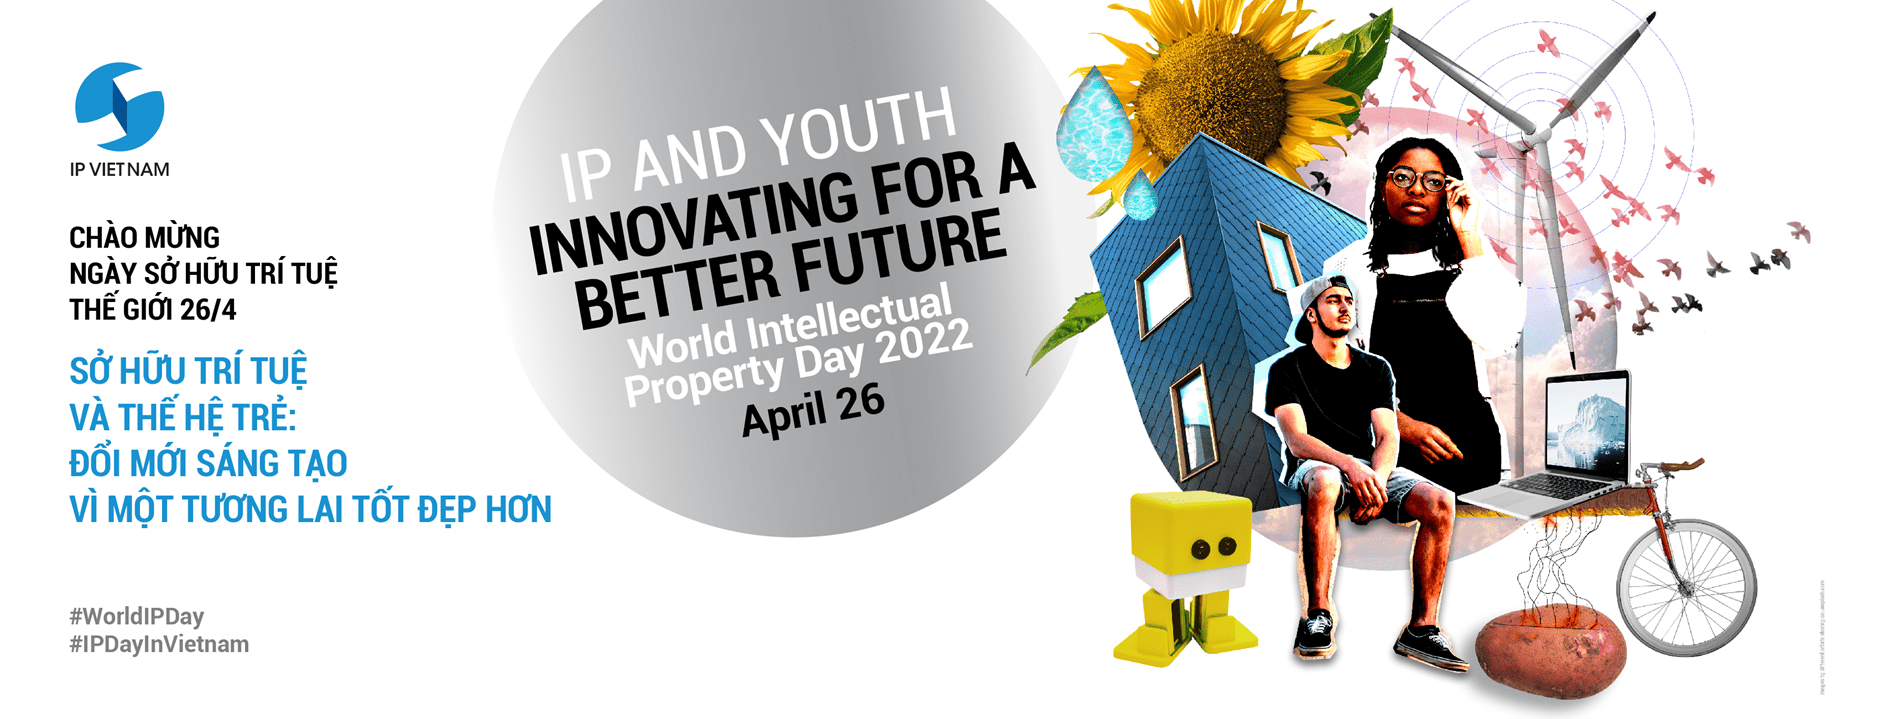 Sở hữu trí tuệ và Thế hệ trẻ: Đổi mới sáng tạo vì một tương lai tốt đẹp hơn -3